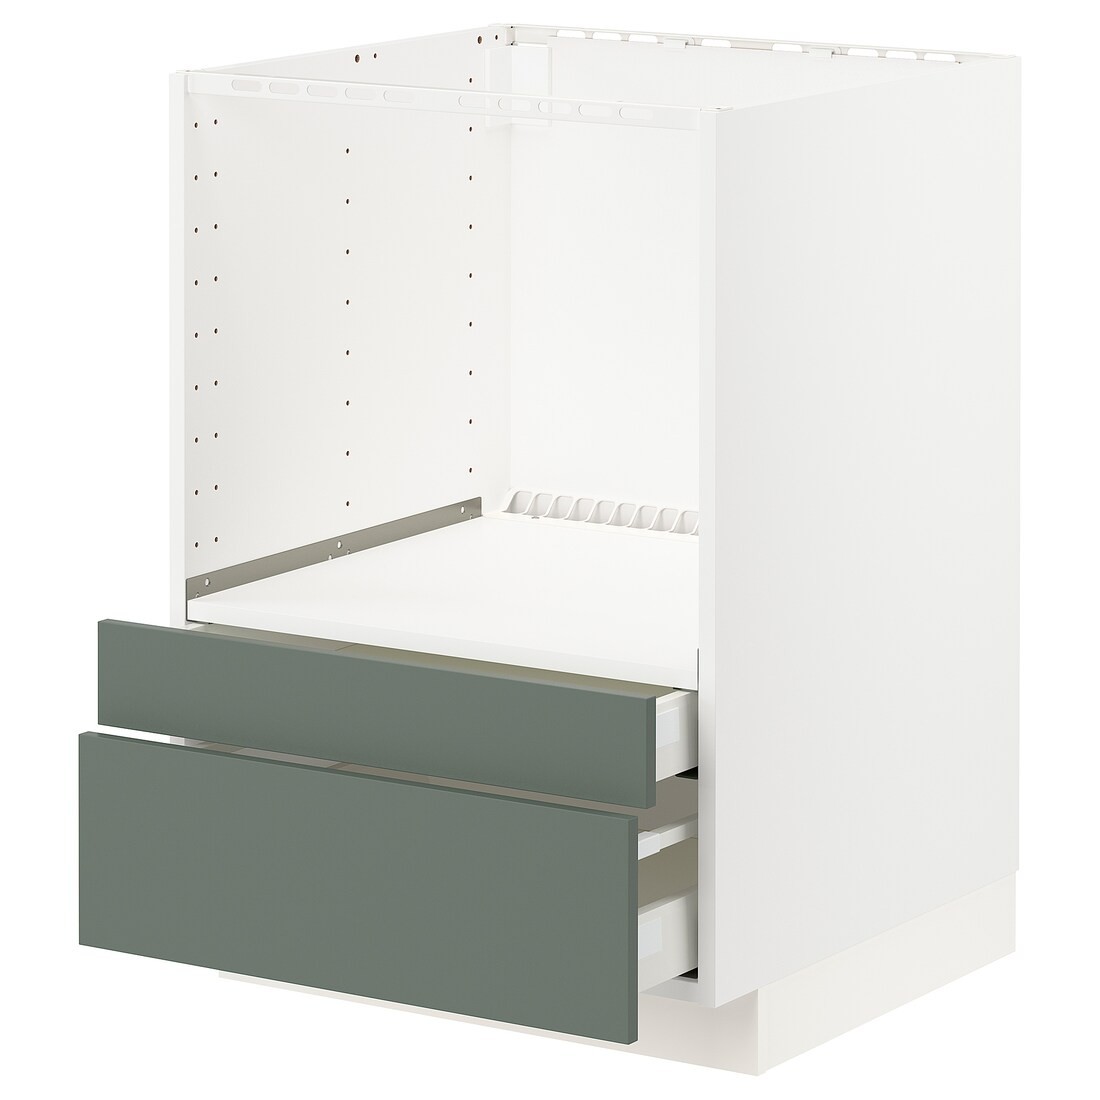 IKEA METOD МЕТОД / MAXIMERA МАКСИМЕРА Напольный шкаф для комби СВЧ / выдвижные ящики, белый / Bodarp серо-зеленый, 60x60 см 69317780 | 693.177.80